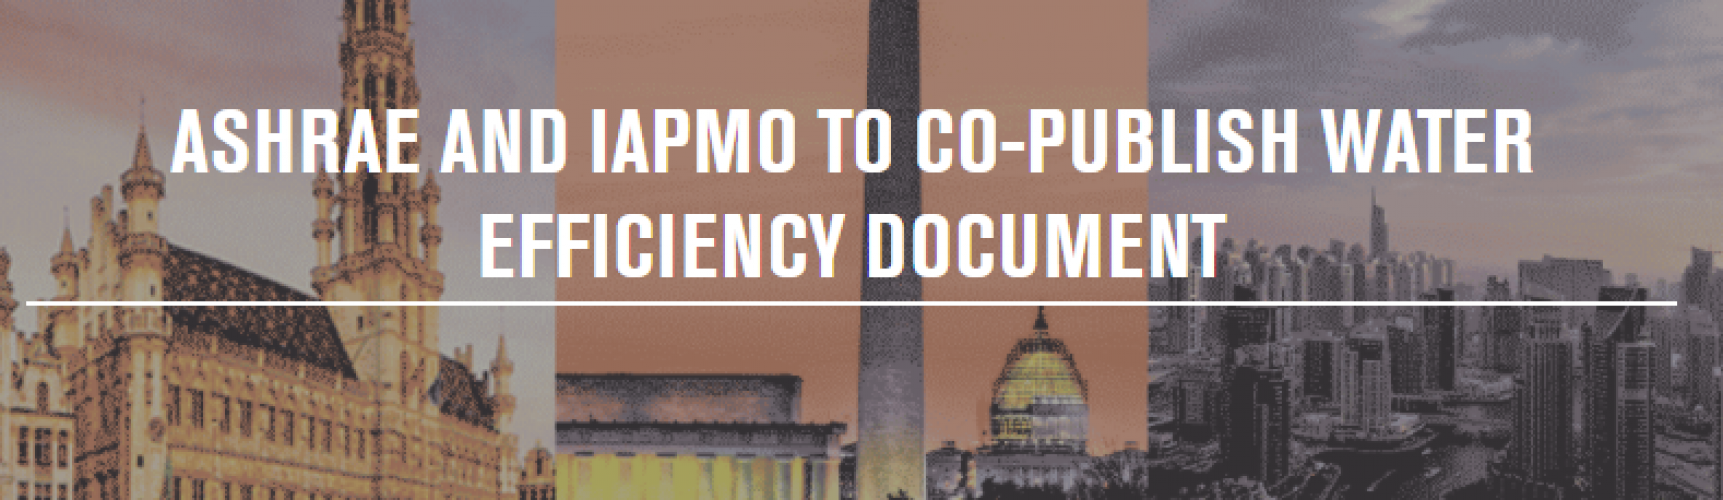 ashrae-e-iapmo-publicarn-conjuntamente-un-documento-sobre-la-eficiencia-del-agua